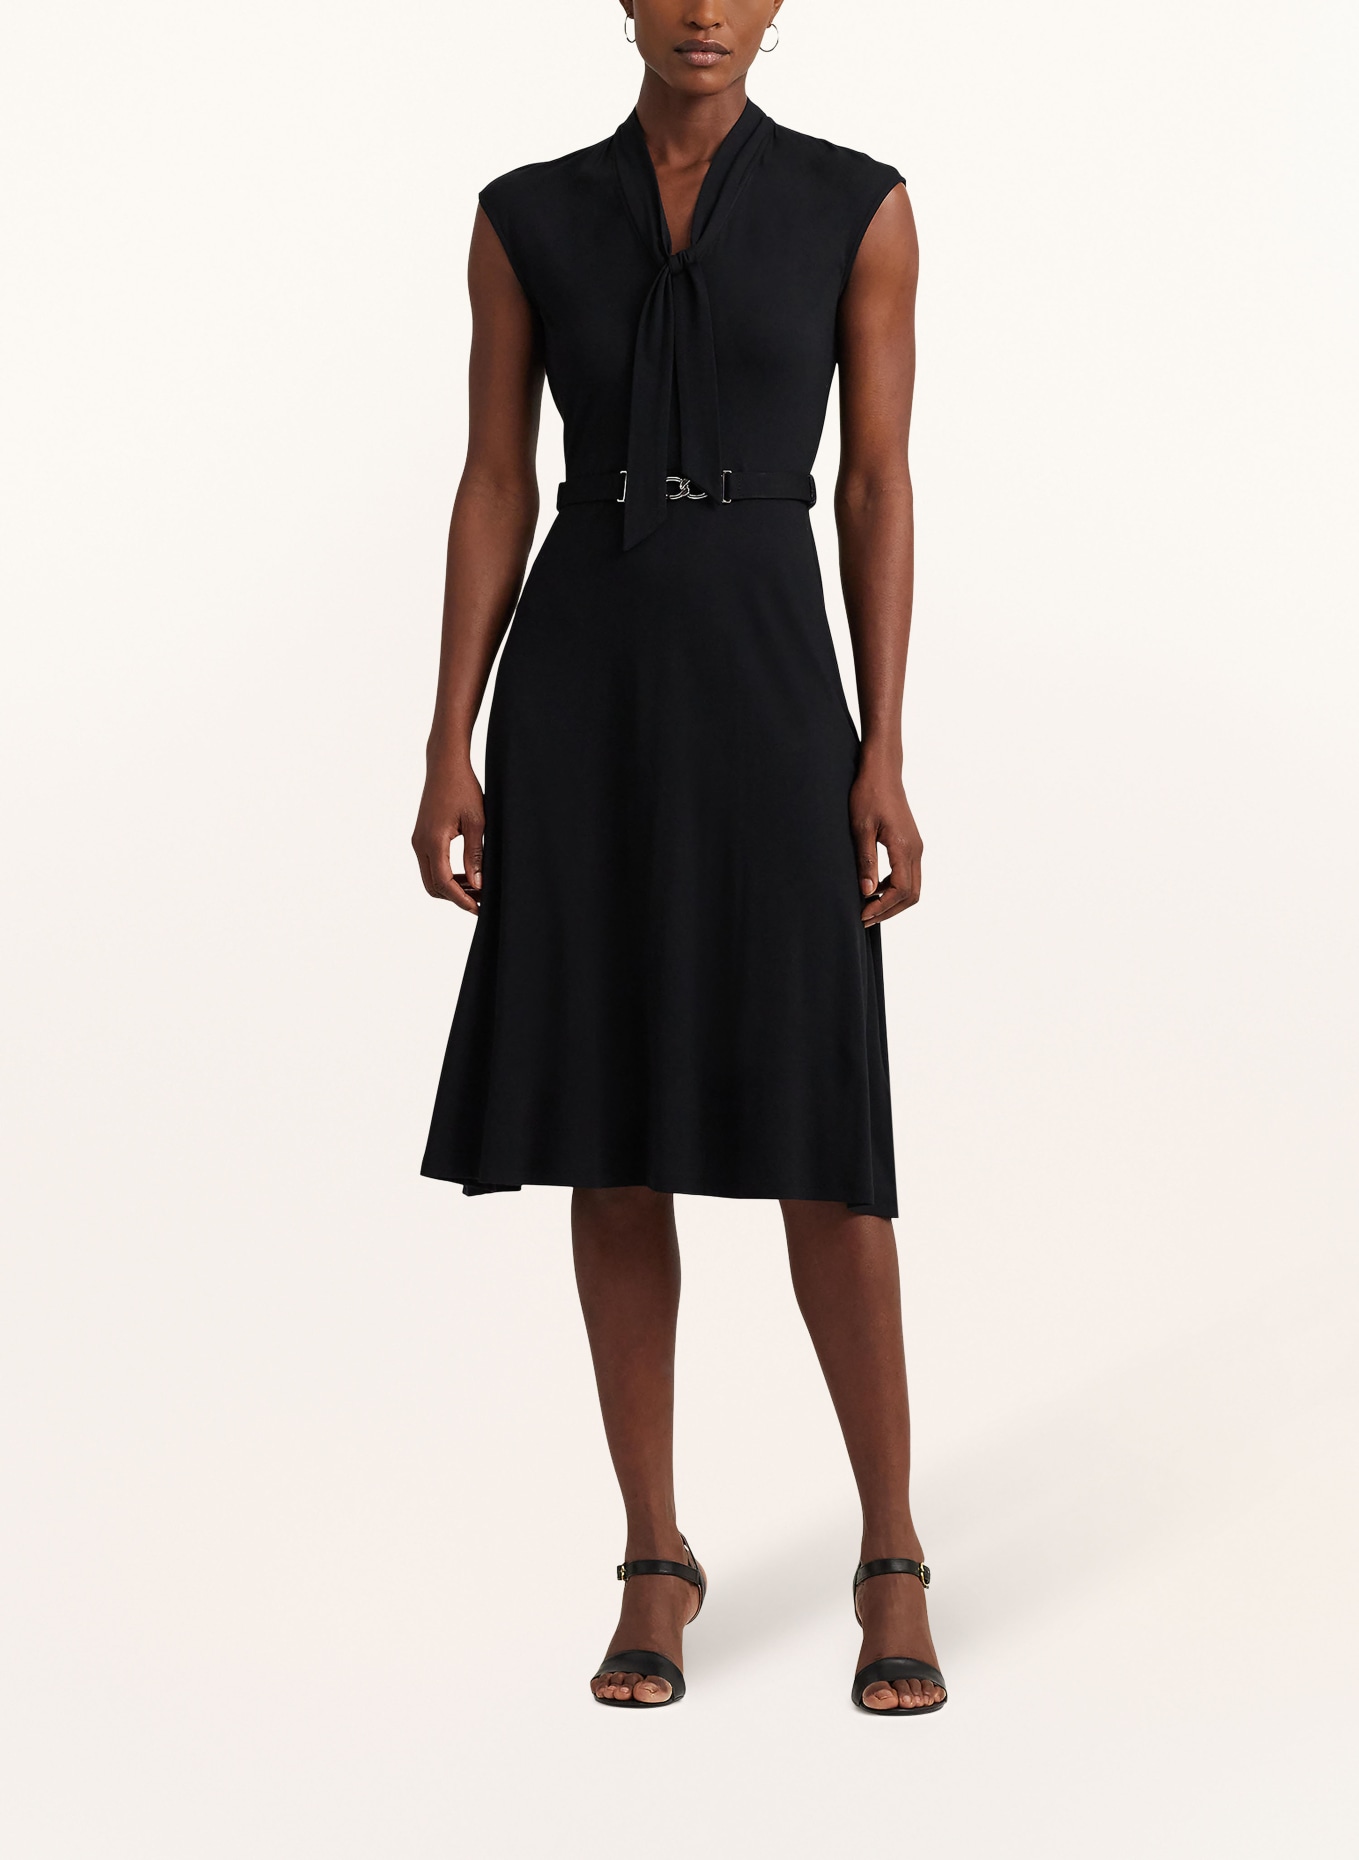 LAUREN RALPH LAUREN Bow-tie collar dress in jersey, Color: BLACK (Image 2)